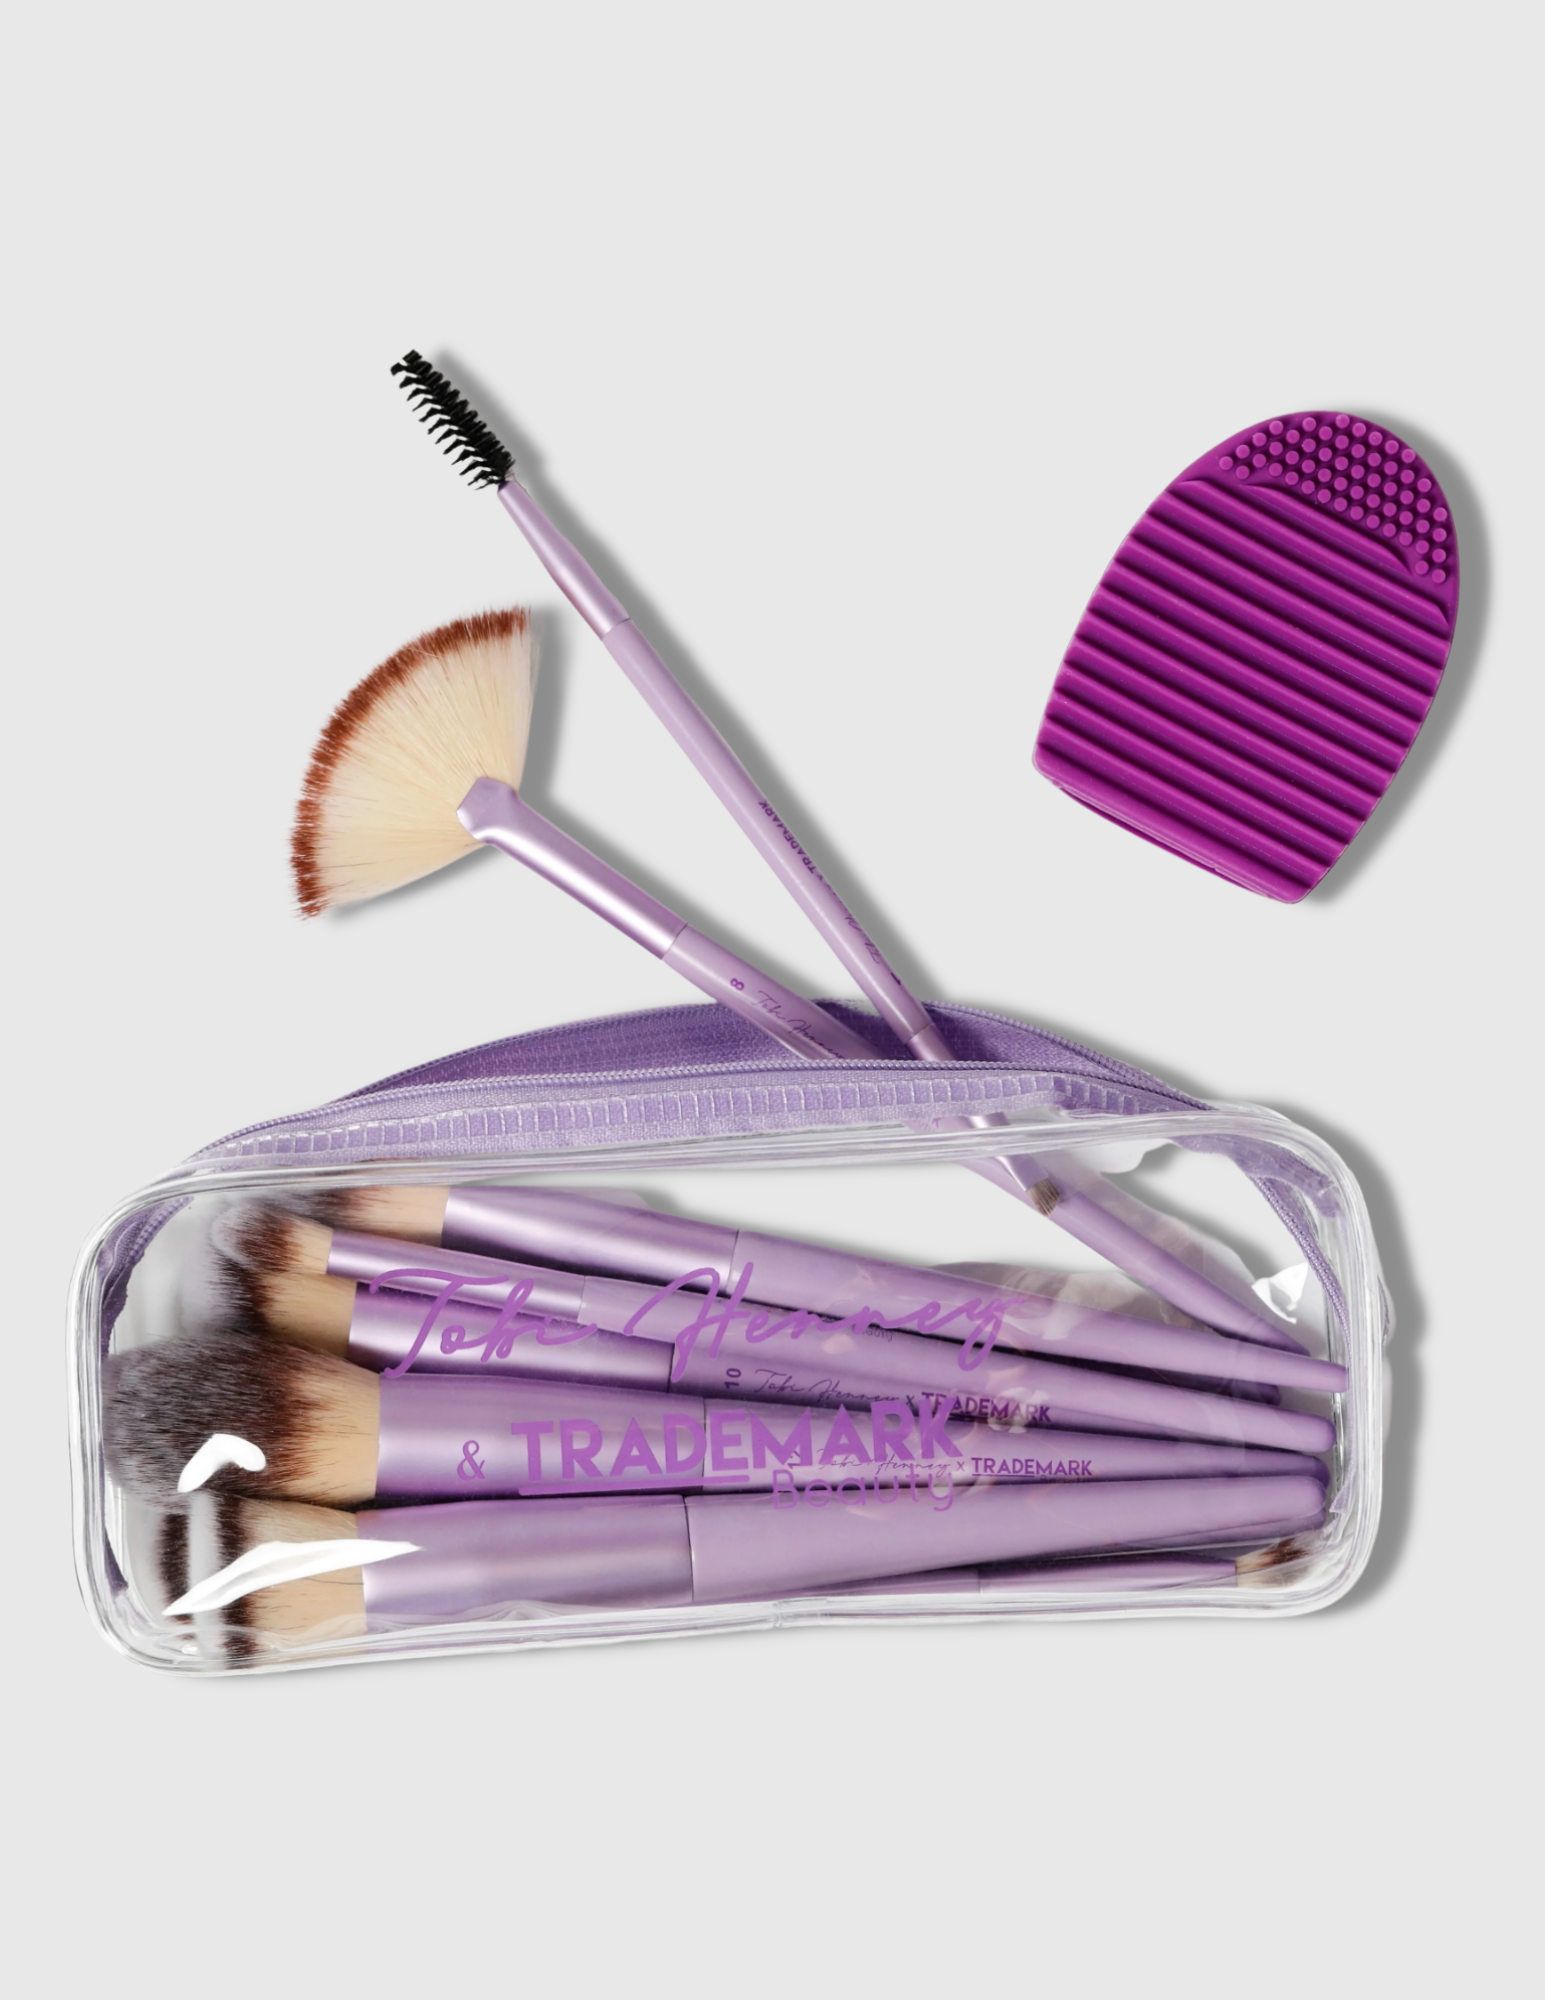 Concealer Makeup Brush - #6 - Trademark Beauty